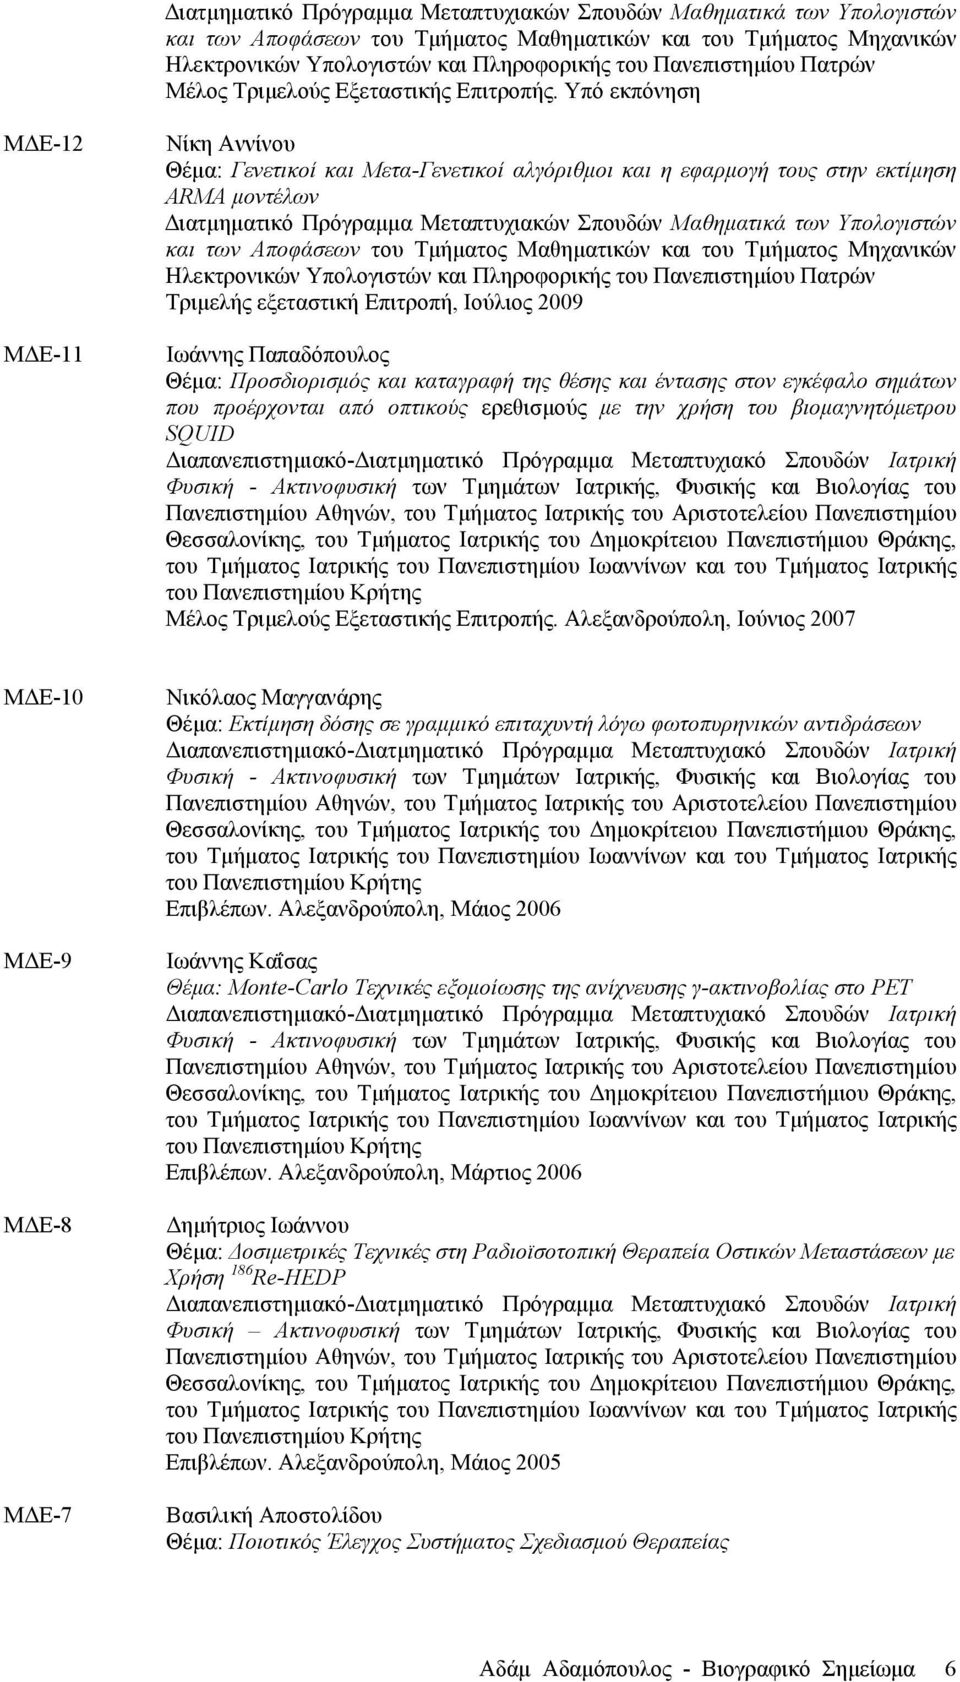 Υπό εκπόνηση ΜΔΕ-12 ΜΔΕ-11 Νίκη Αννίνου Θέµα: Γενετικοί και Μετα-Γενετικοί αλγόριθµοι και η εφαρµογή τους στην εκτίµηση ARMA µοντέλων  Πανεπιστηµίου Πατρών Τριµελής εξεταστική Επιτροπή, Ιούλιος 2009